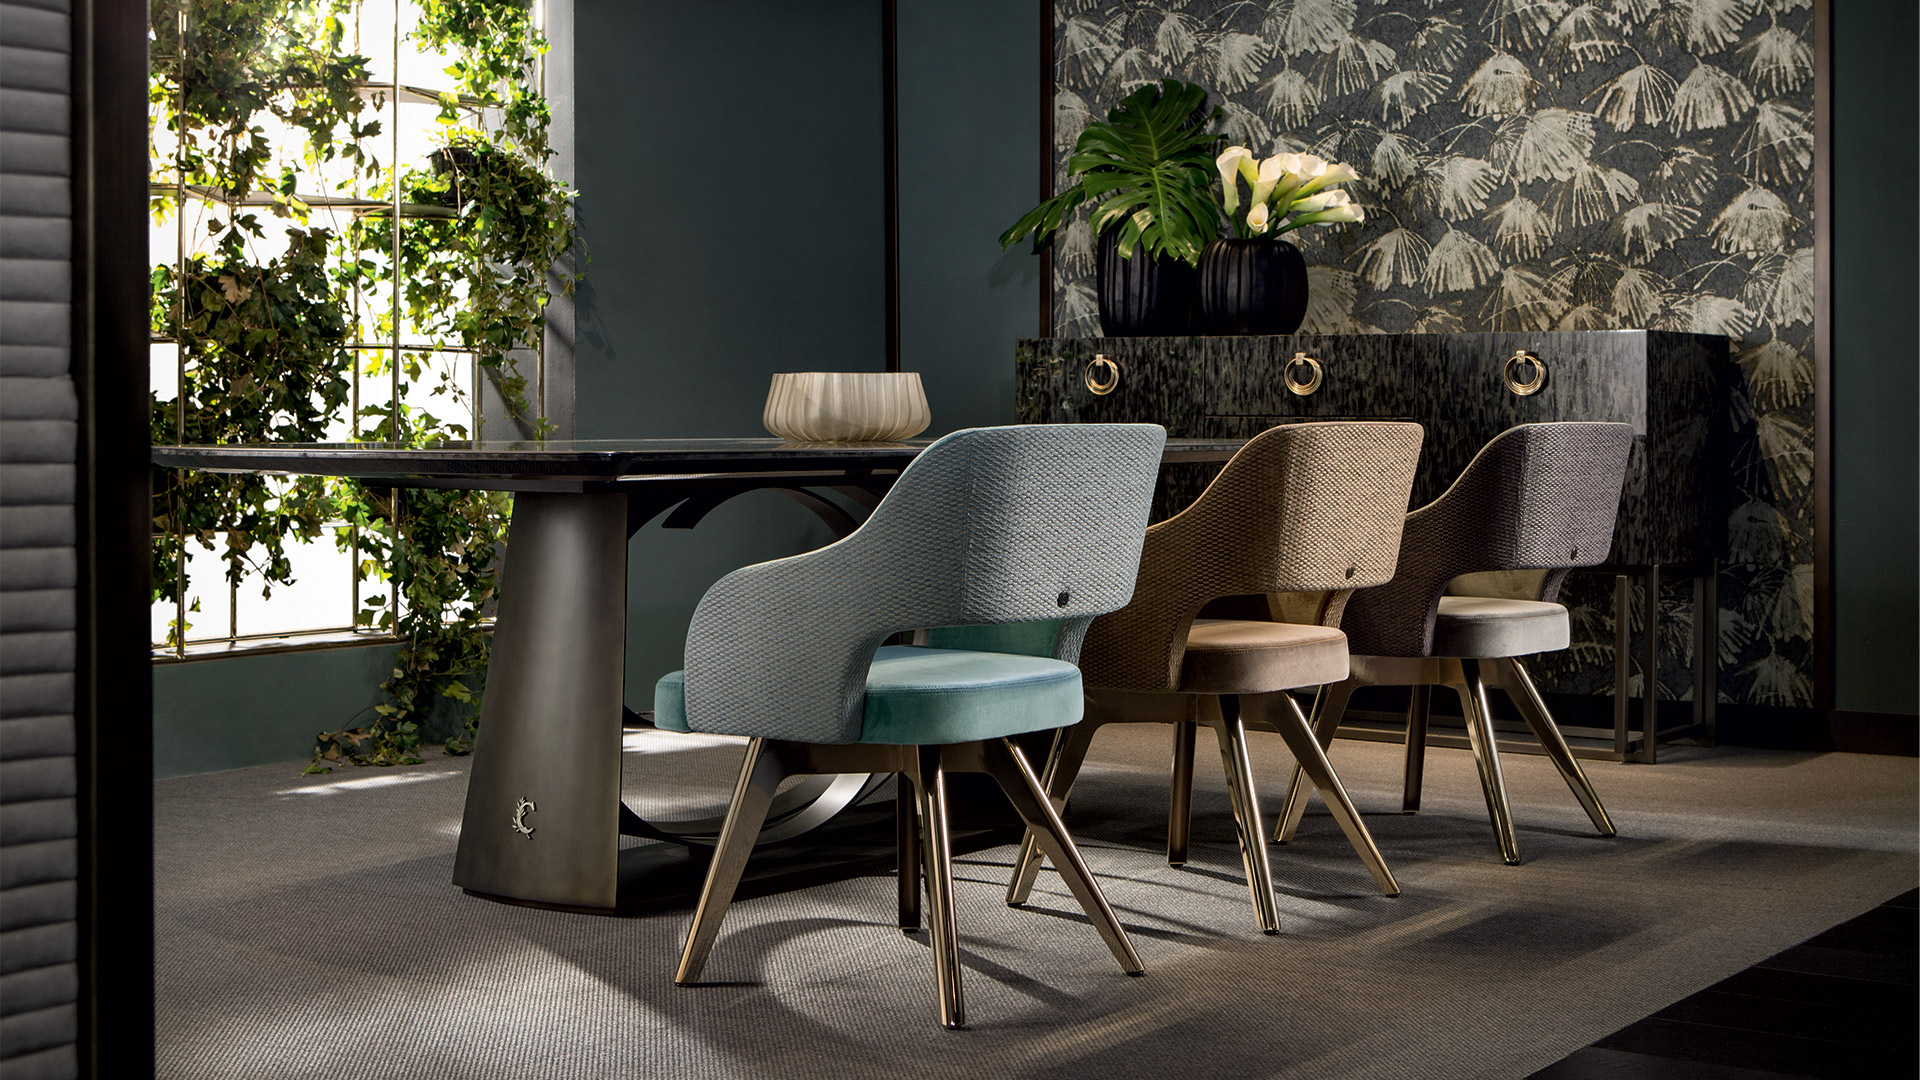 Top furniture trends 2019 - Cantori